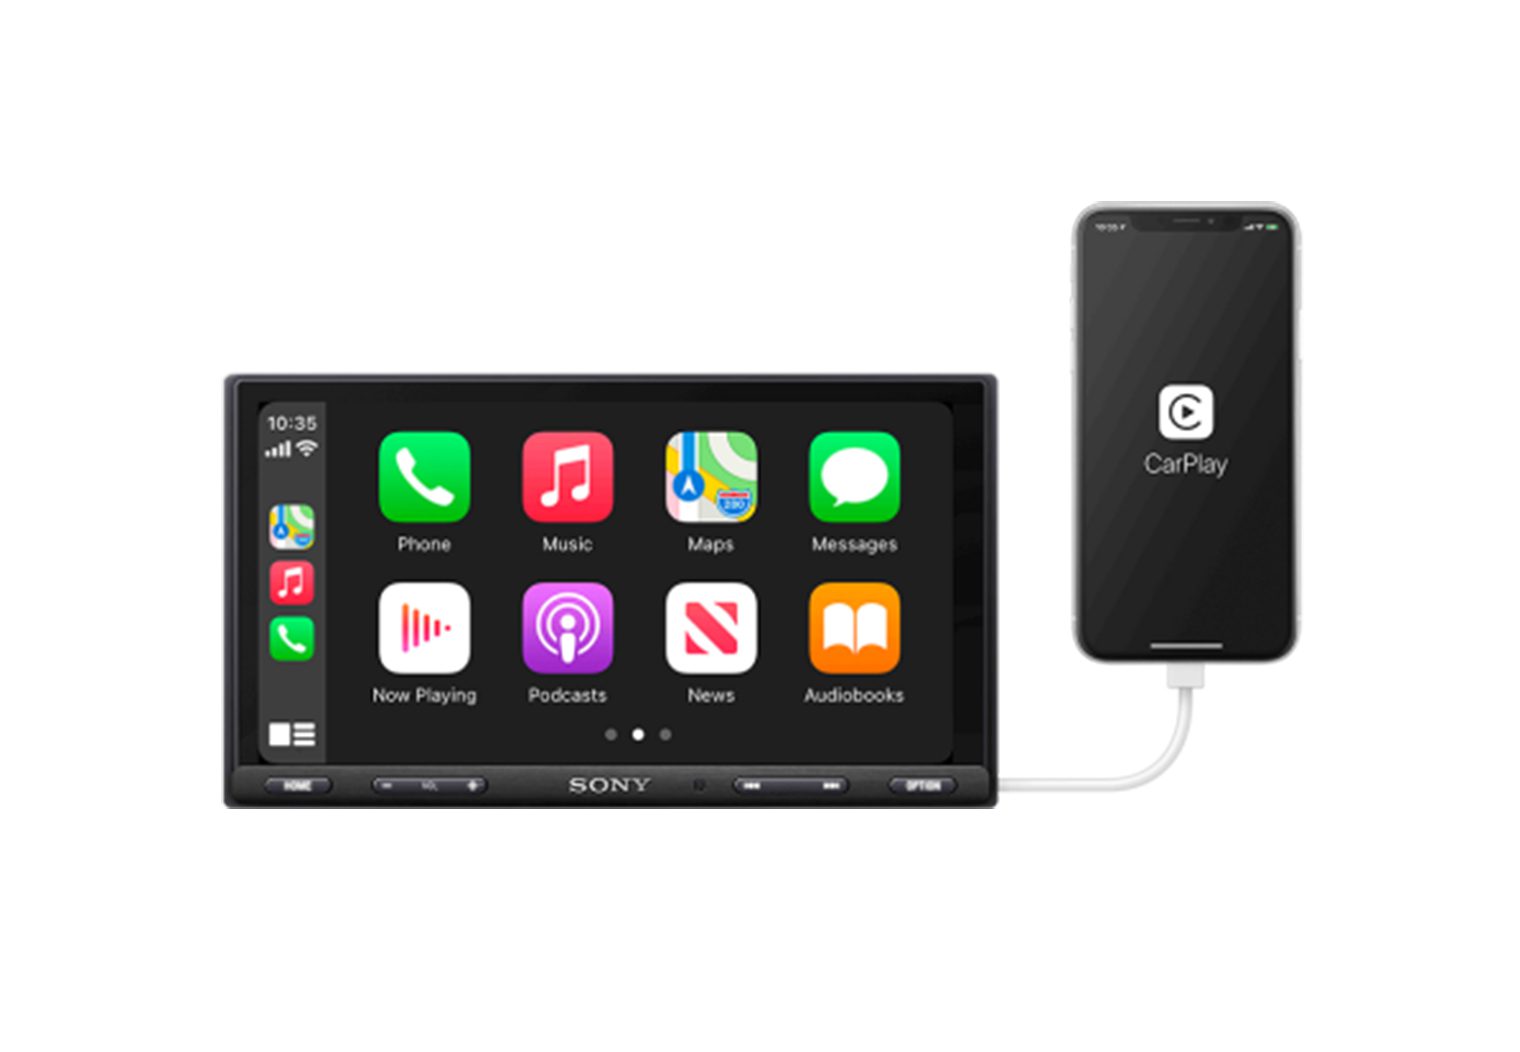 Sony XAV-AX5600 with apple carplay icons on screen